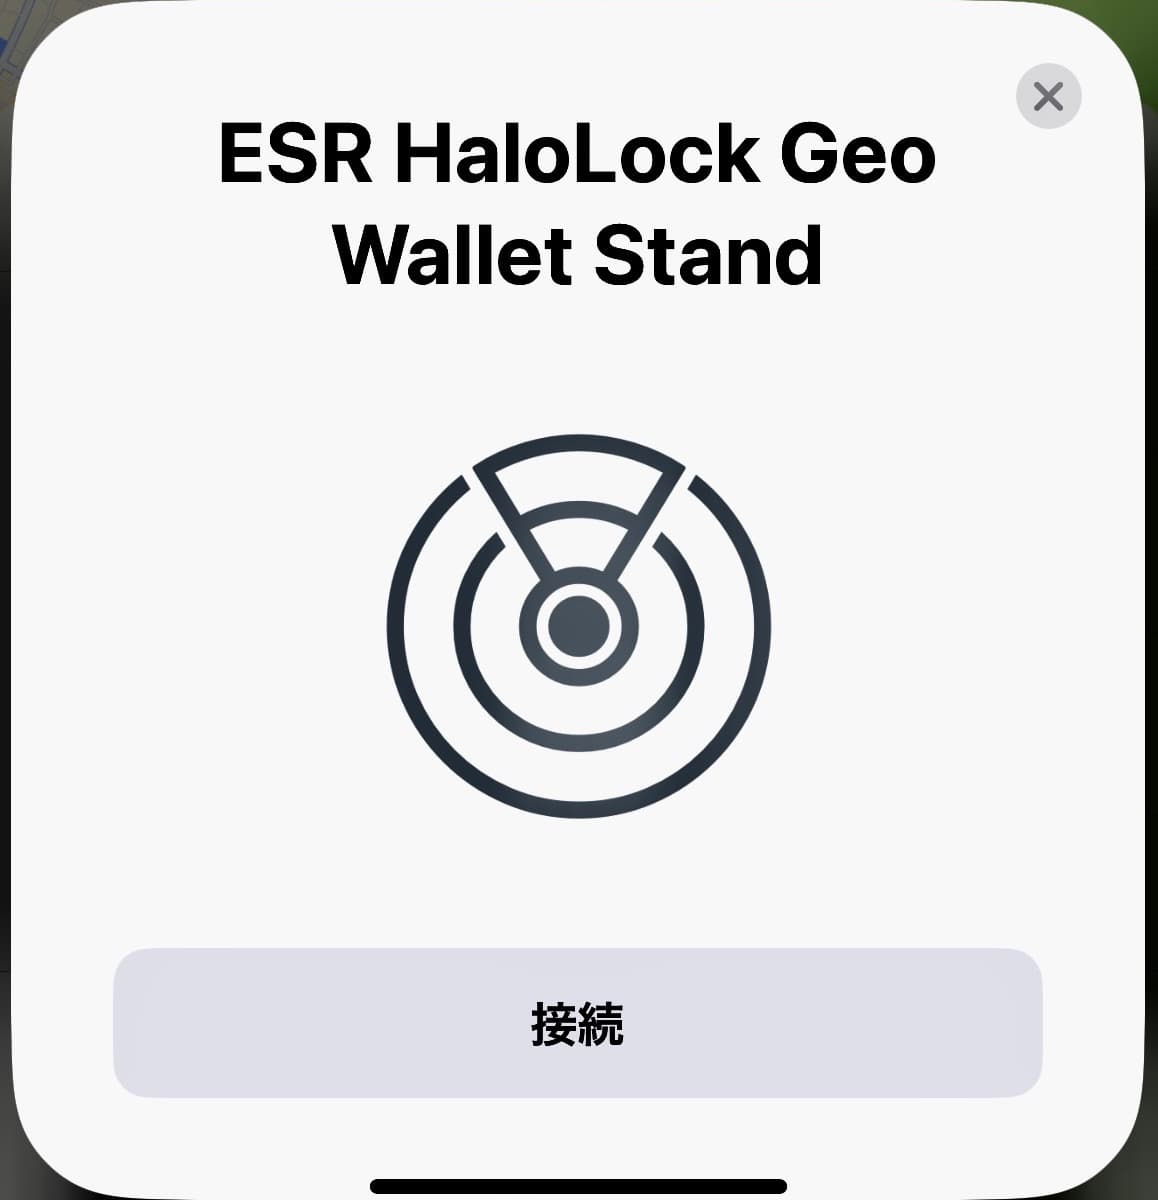 ESR HaloLock GEO Wallet Standの登録画面